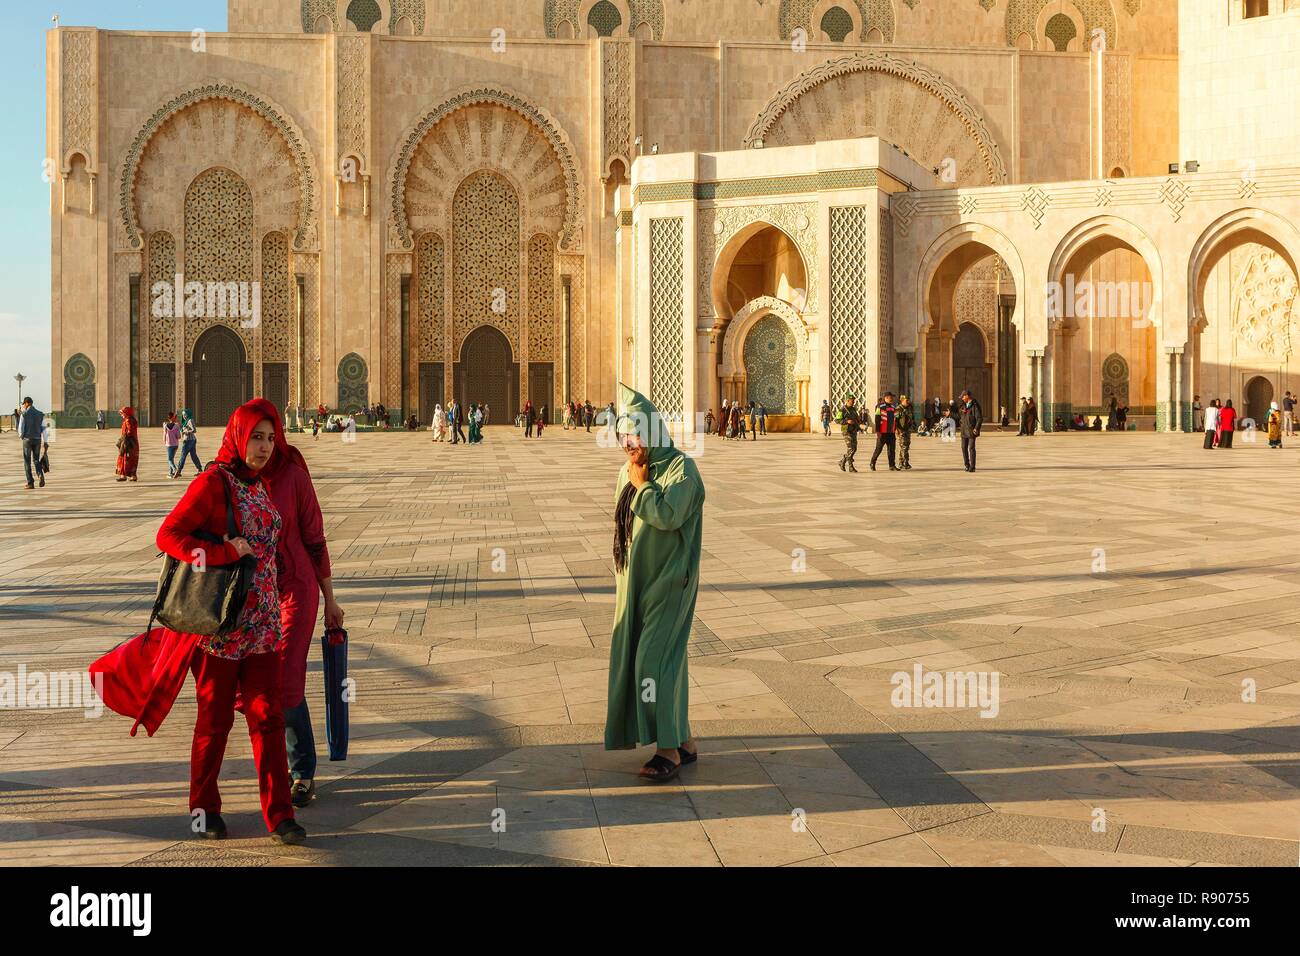 Marruecos, Casablanca, la explanada de la mezquita de Hassan II al atardecer Foto de stock